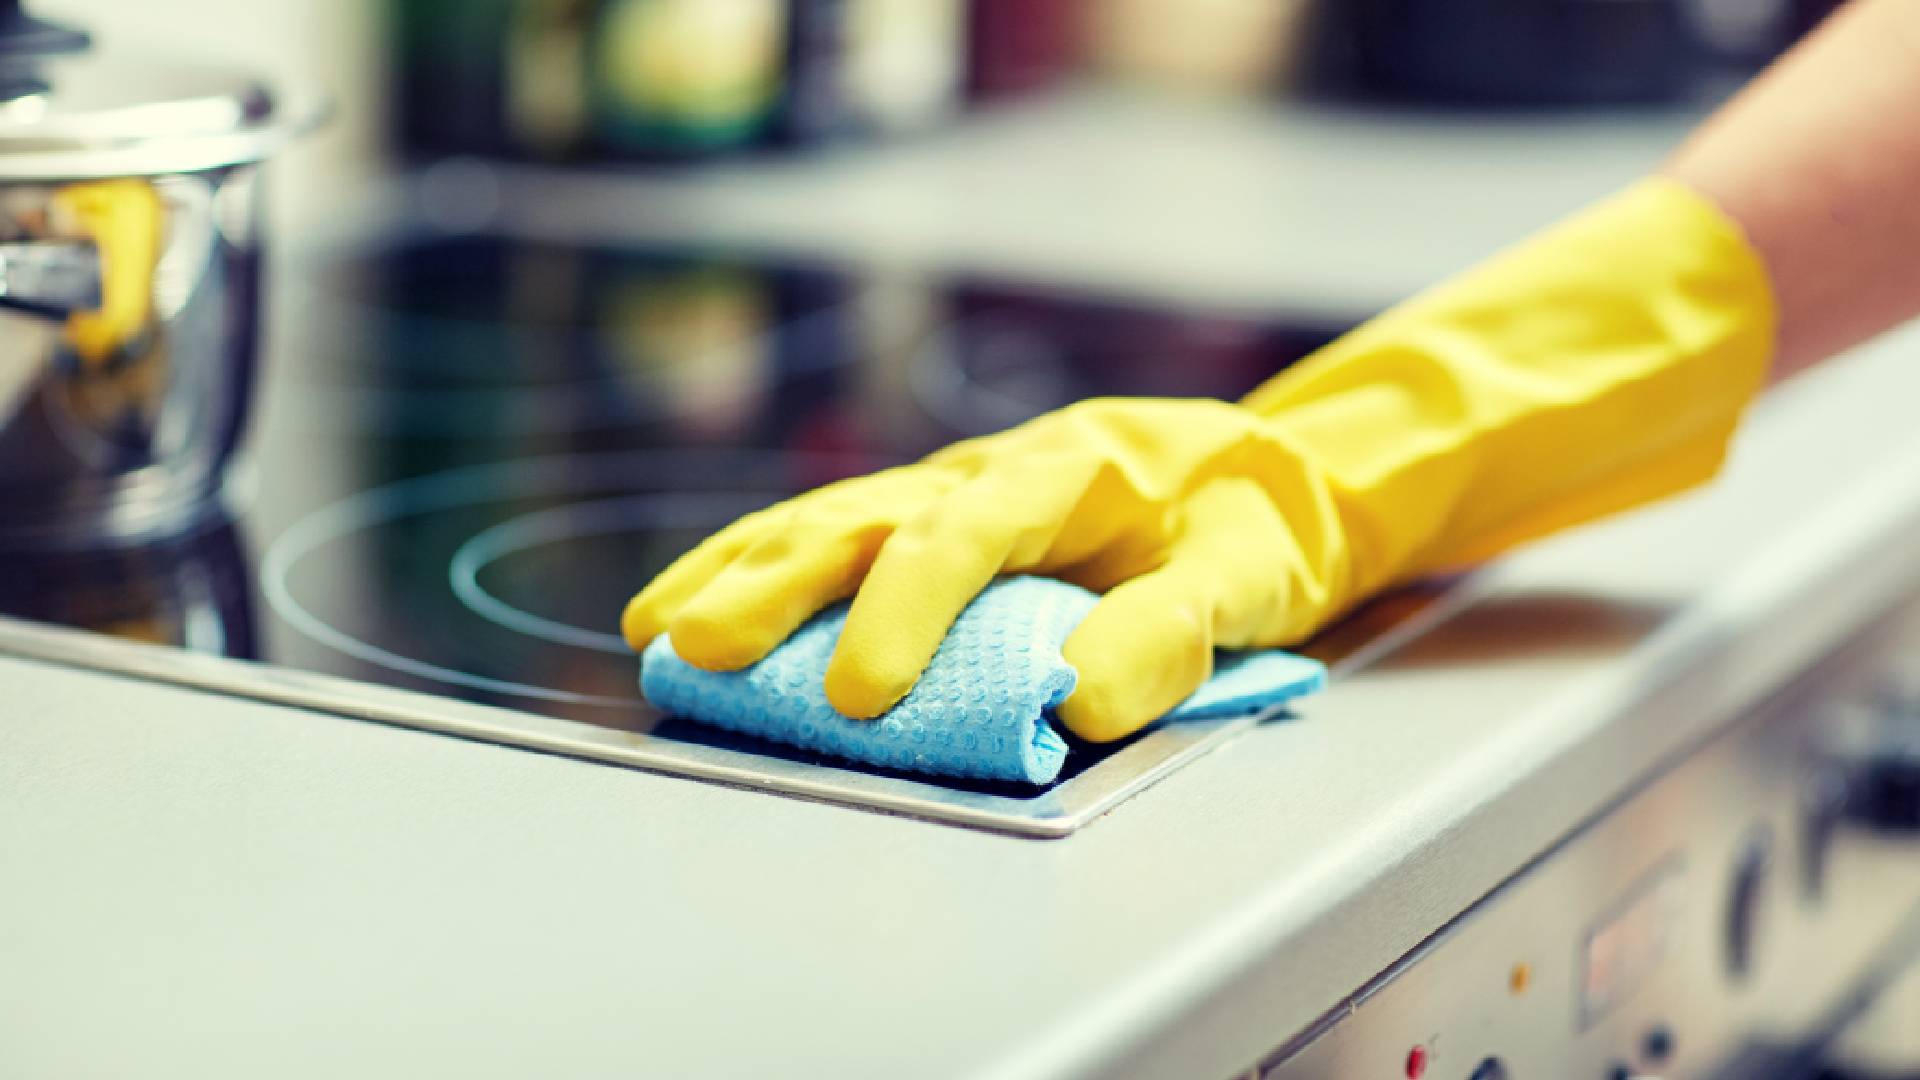  панель будет сиять чистотой: поможет копеечное средство с кухни